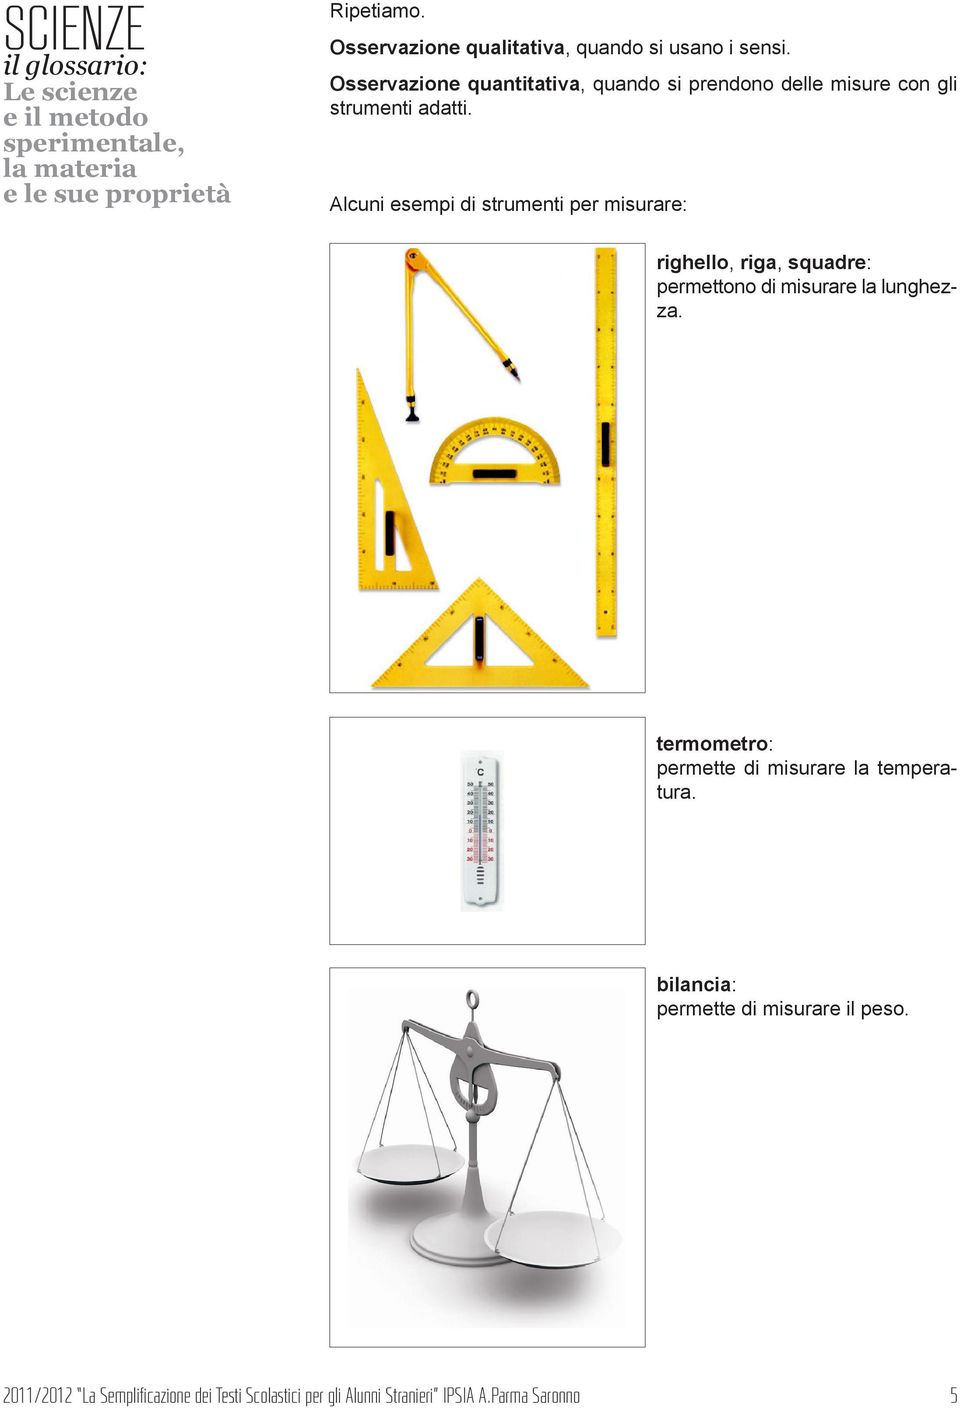 Alcuni esempi di strumenti per misurare: righello, riga, squadre: permettono di misurare la lunghezza.